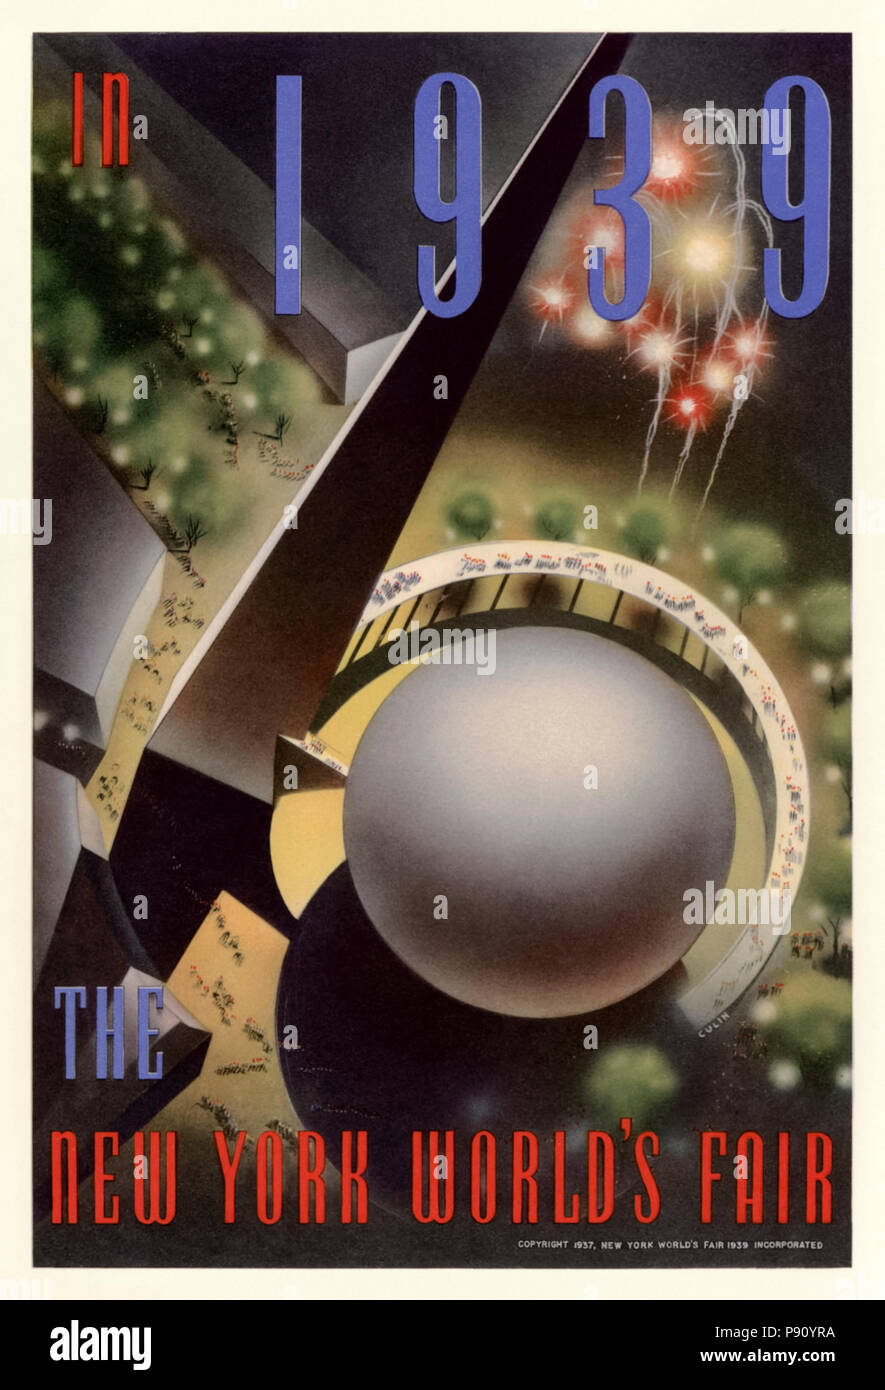 "In New York World's Fair 1939" Plakat von Nembhard N. Culin (1908-1990) im Jahr 1937 veröffentlichten zeigt eine Luftaufnahme des Trylon und Perisphere, die im Mittelpunkt des Internationalen Ausstellung, die vom 30. April 1939 nahmen bis zum 31. Oktober 1940 in Flushing Meadows in New York City gebildet. Weitere Informationen finden Sie unten. Stockfoto